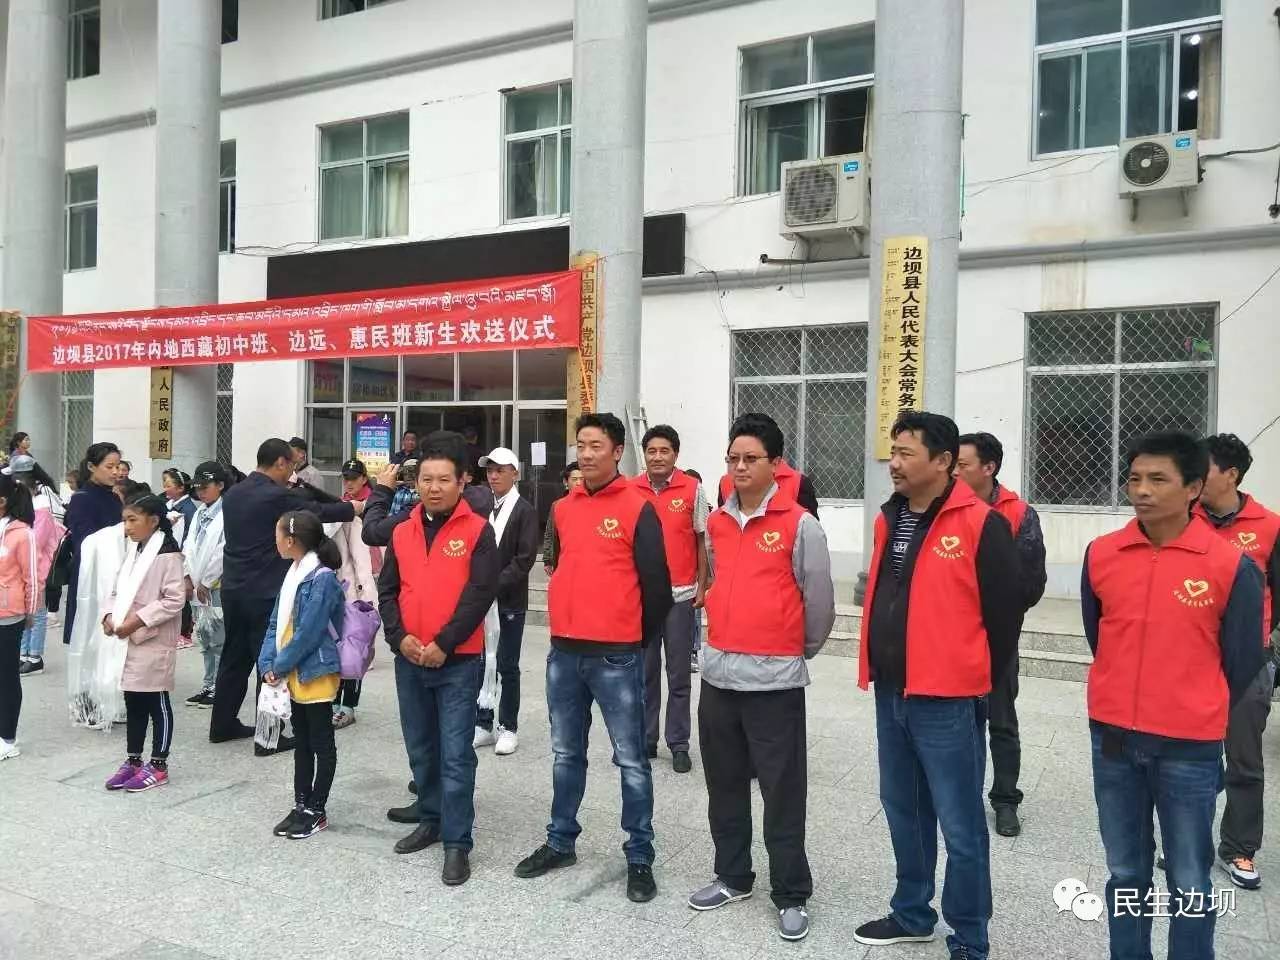 【教育教学—欢送仪式】边坝县举行2017年内地西藏初中班,边远班和